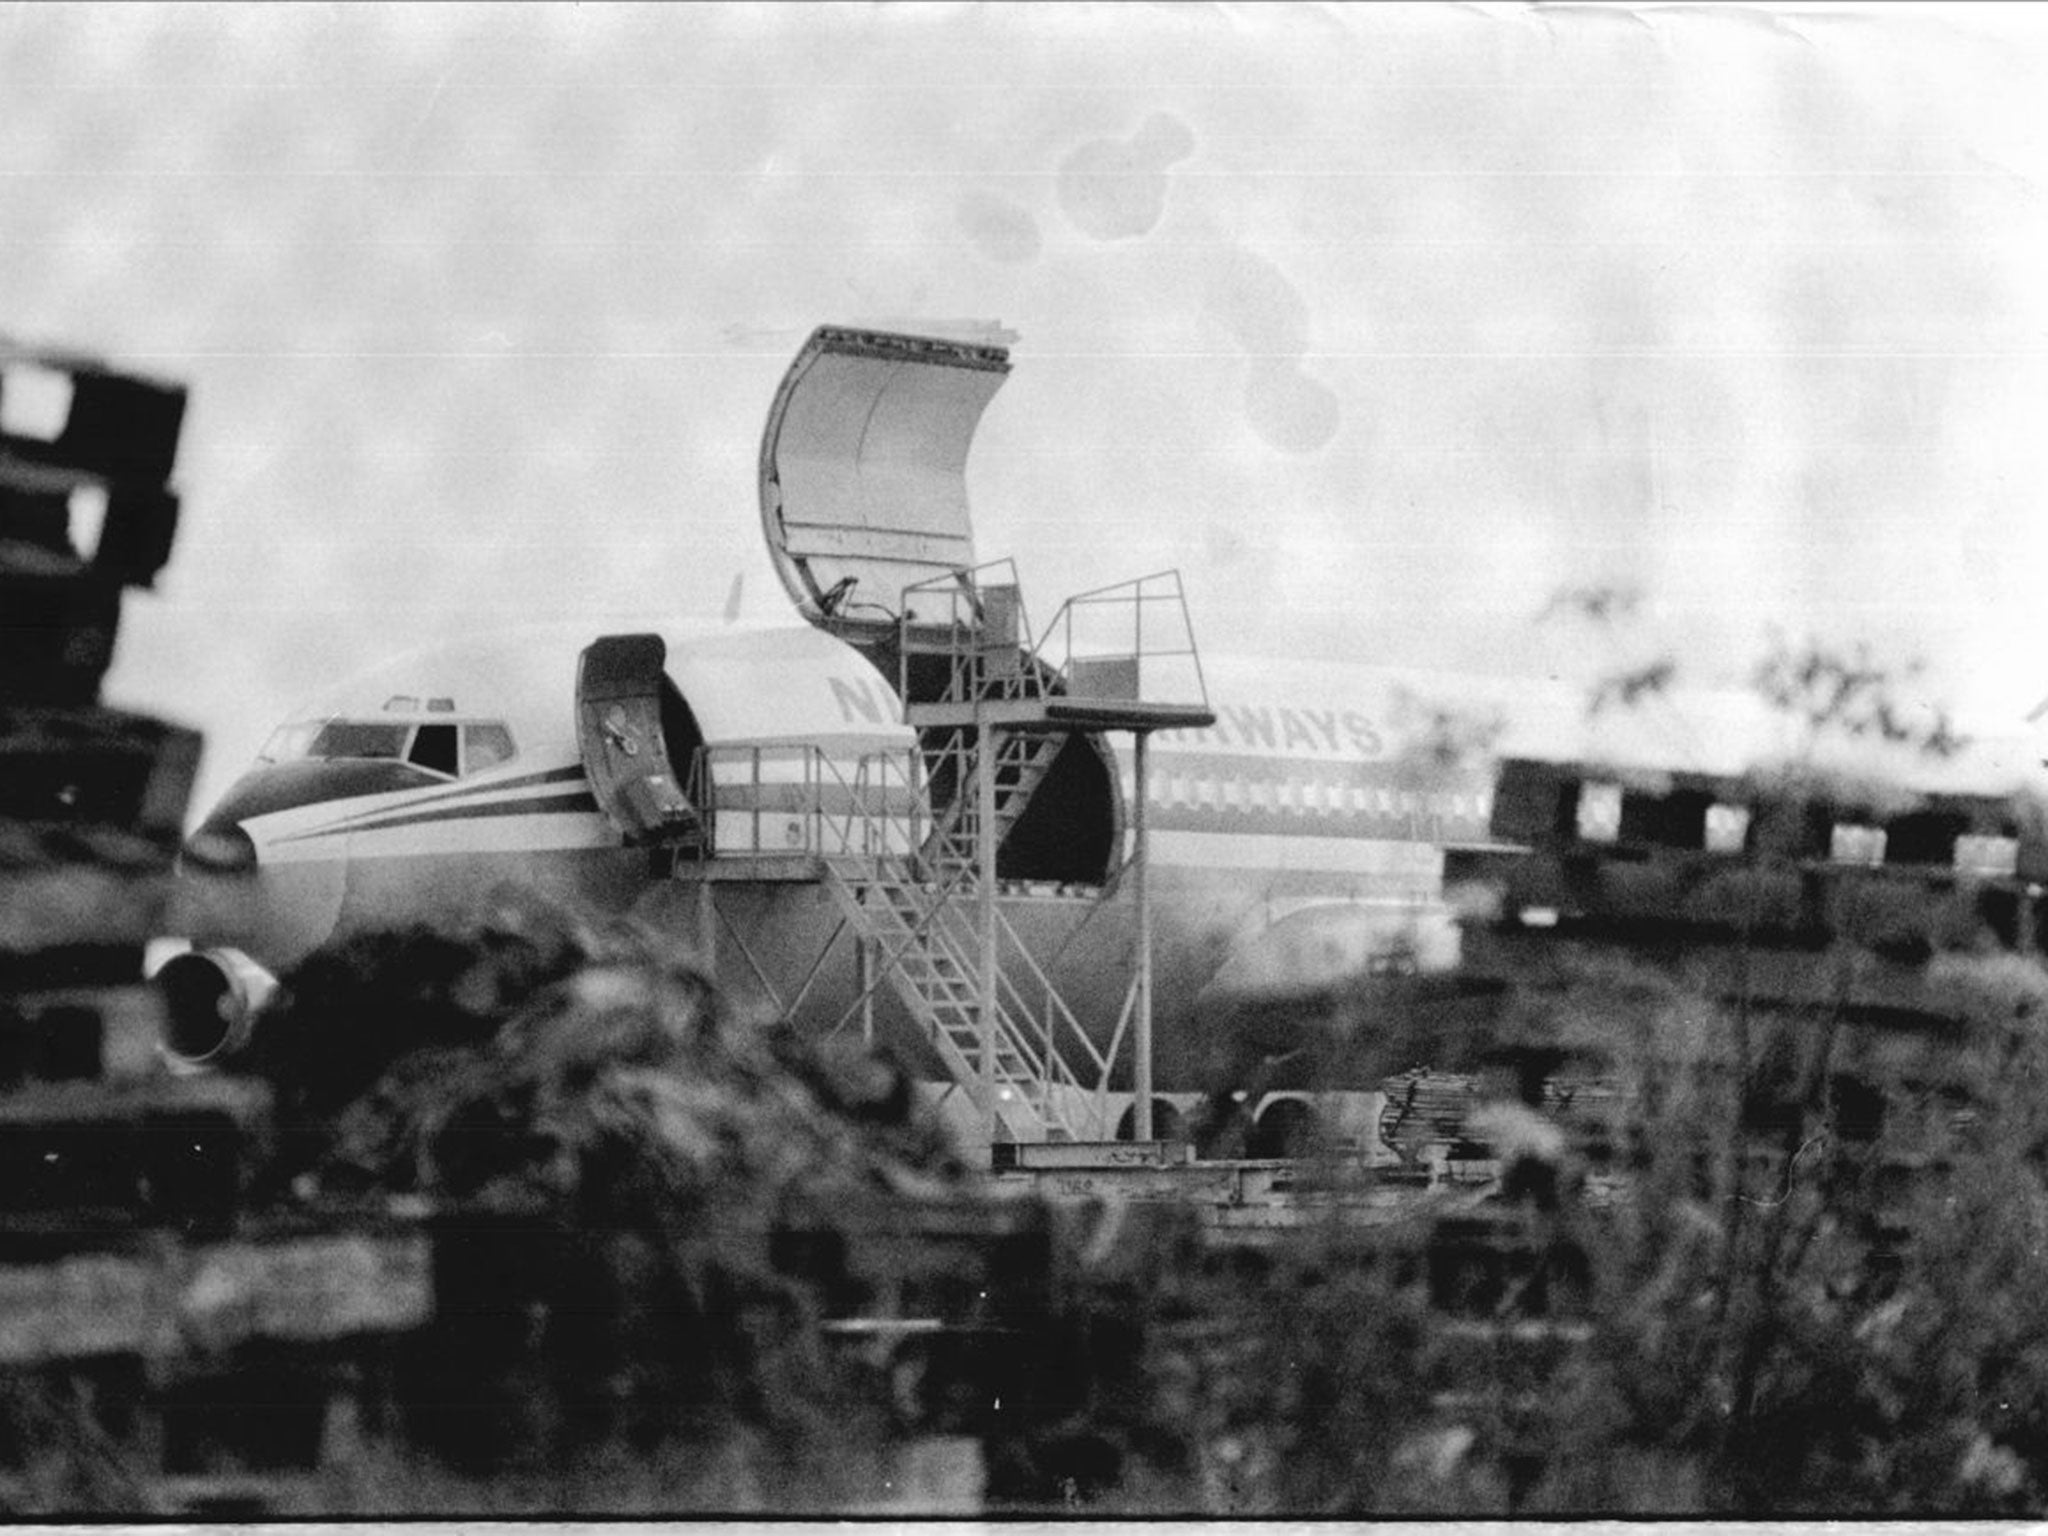 The Nigerian Boeing 707 from which Dikko, below, was rescued